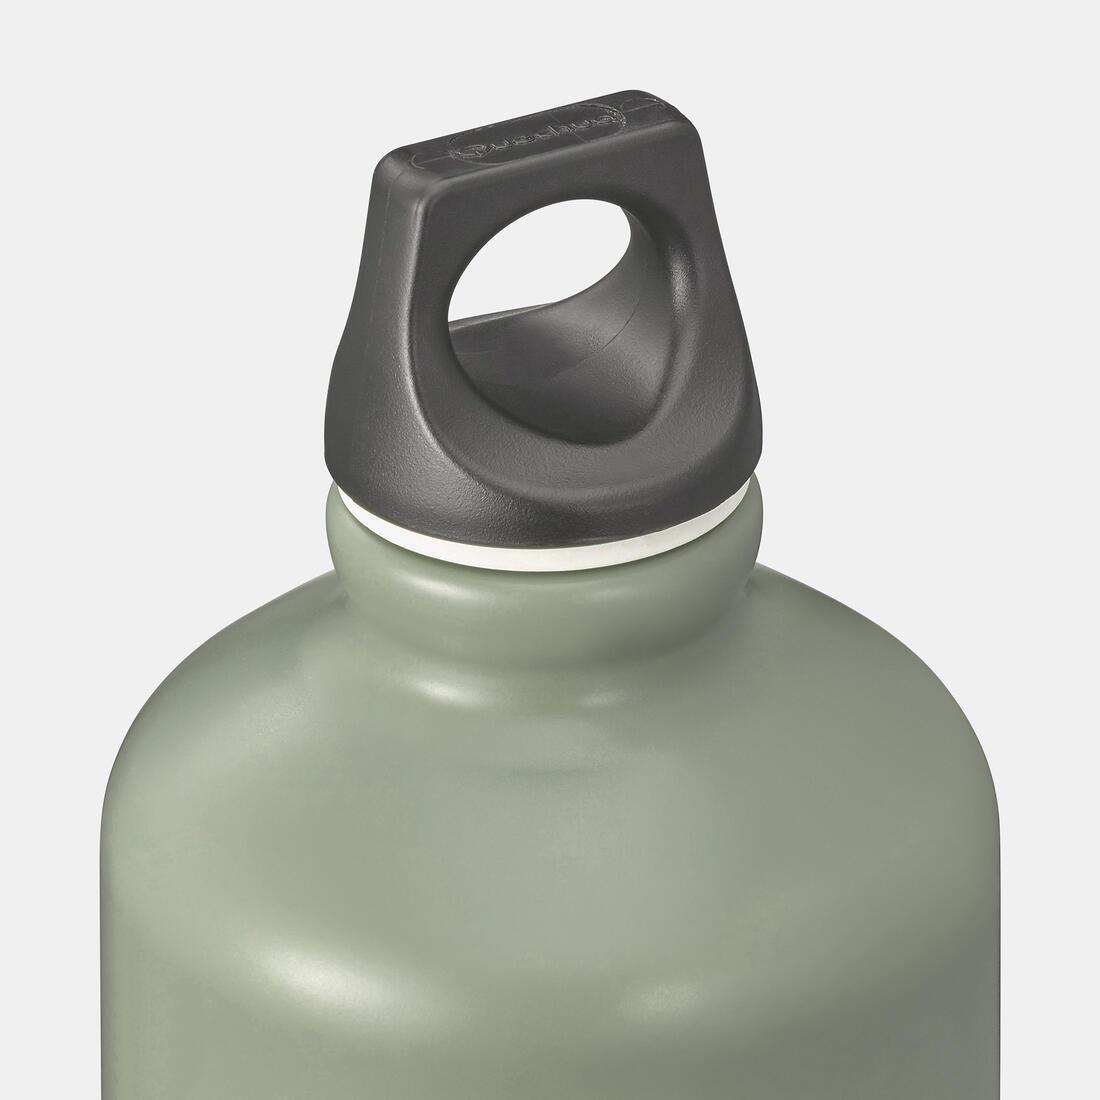 QUECHUA - Aluminium Screw-Top Water Bottle, Grey